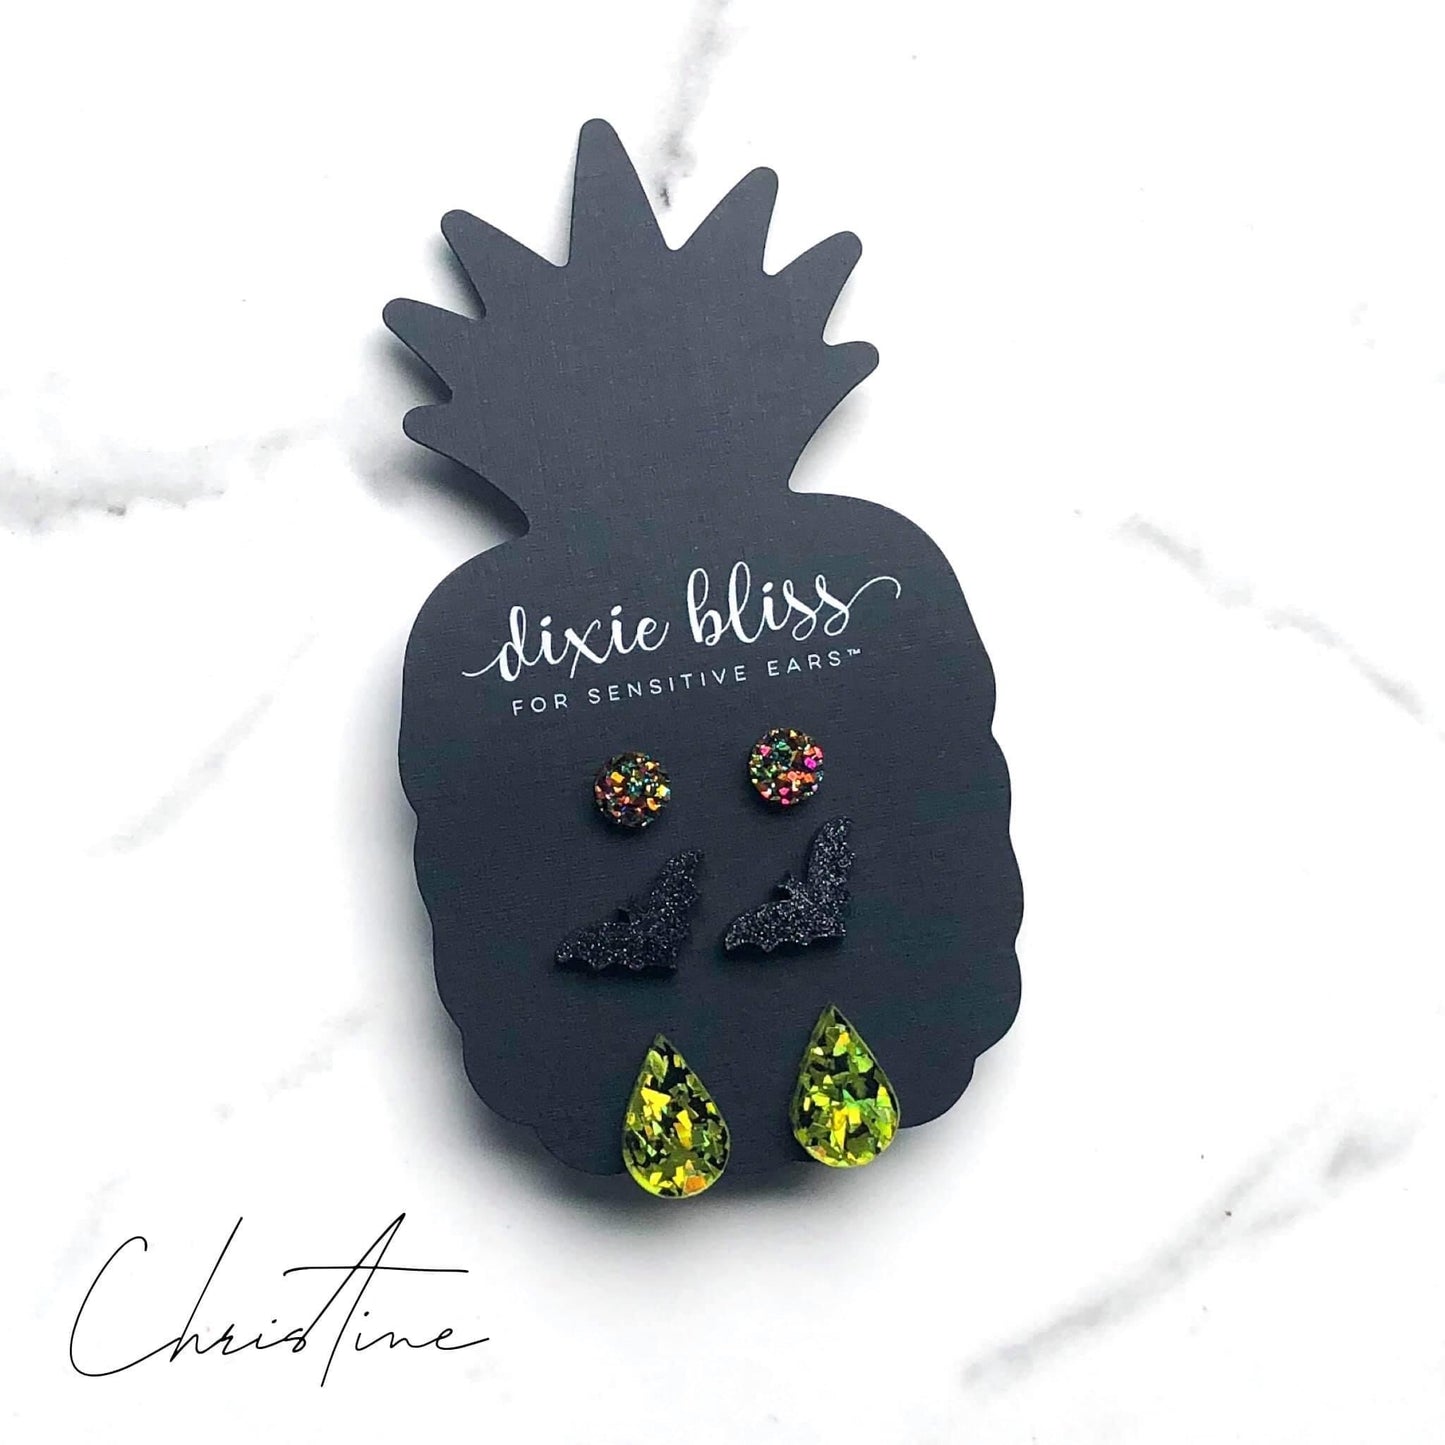 Christine Druzy Earrings - Our Little Secret Boutique